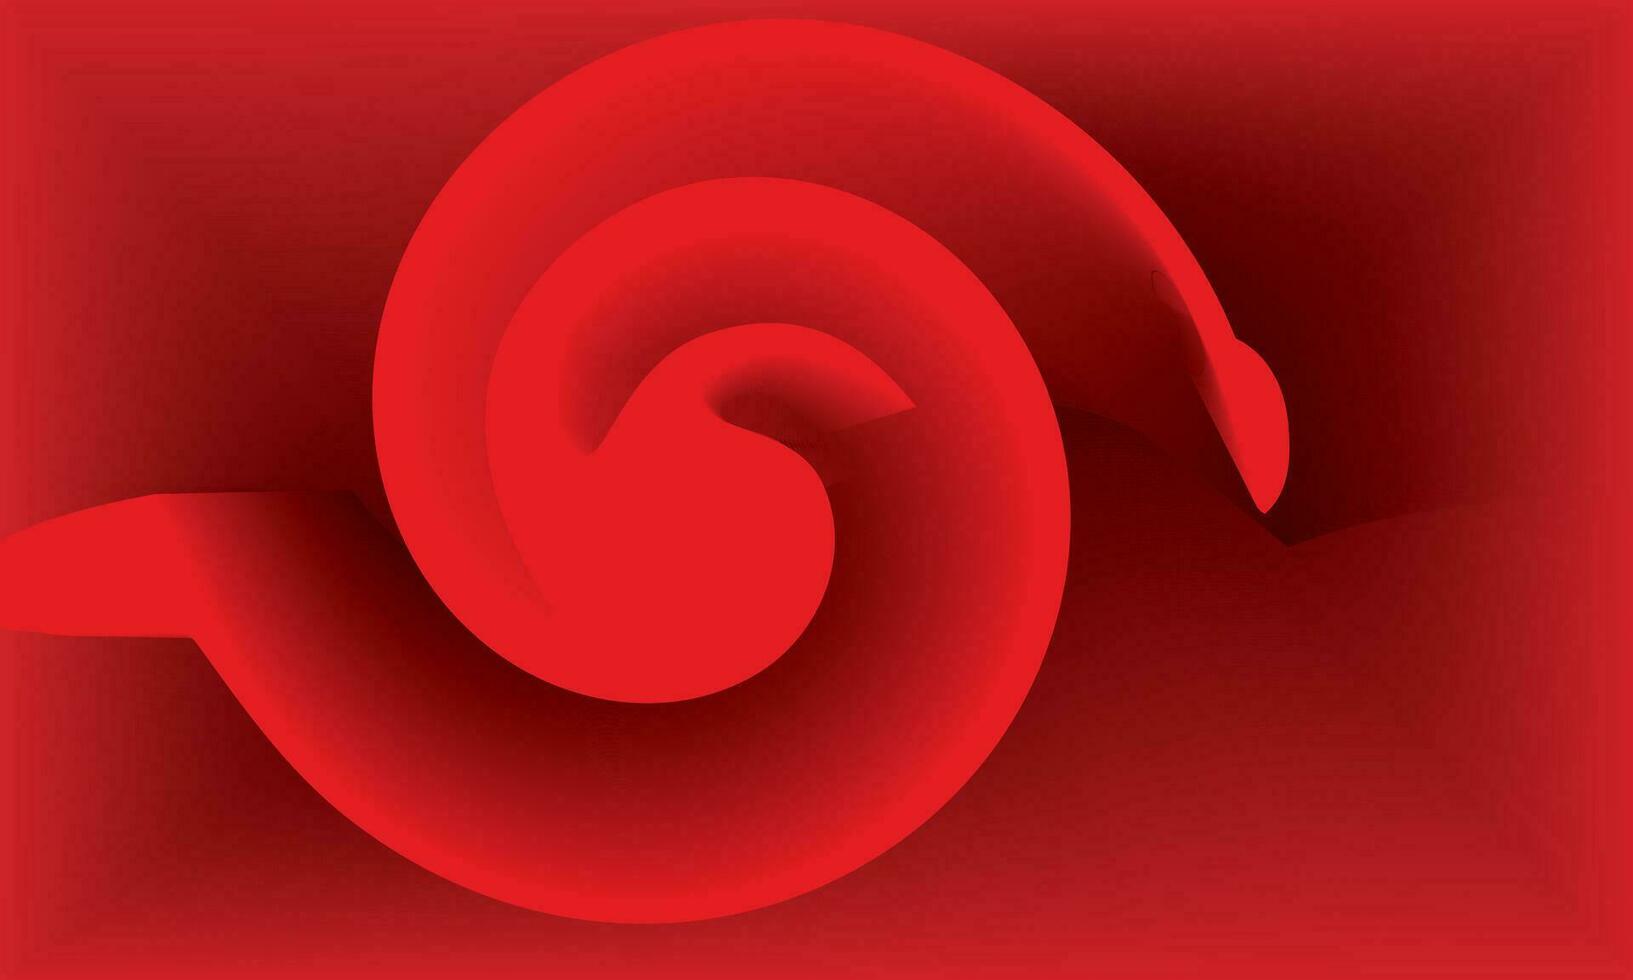 abstrakt rot Hintergrund mit ein rot Strudel auf ein rot Hintergrund, Spiral- runden Kreis, rot Rose vektor